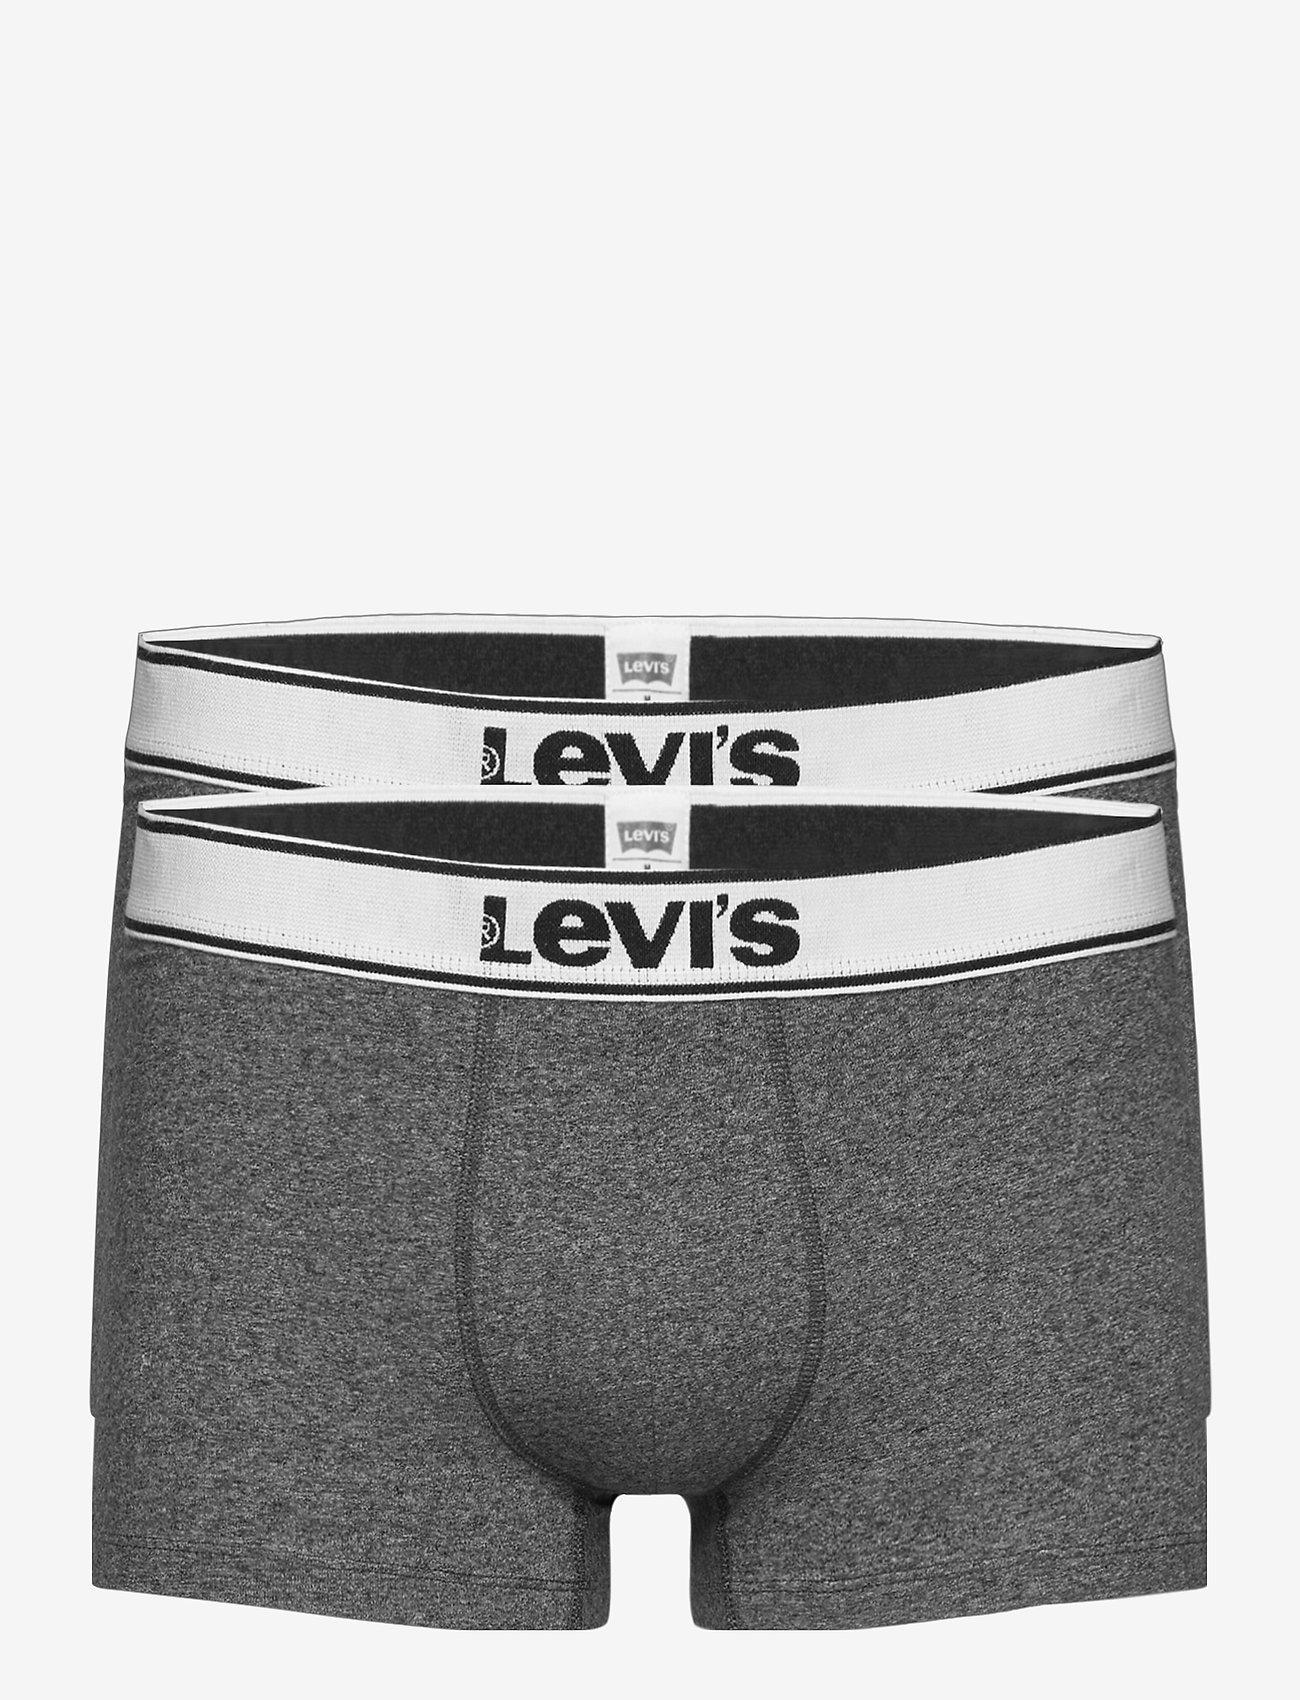 levis underwear trunks